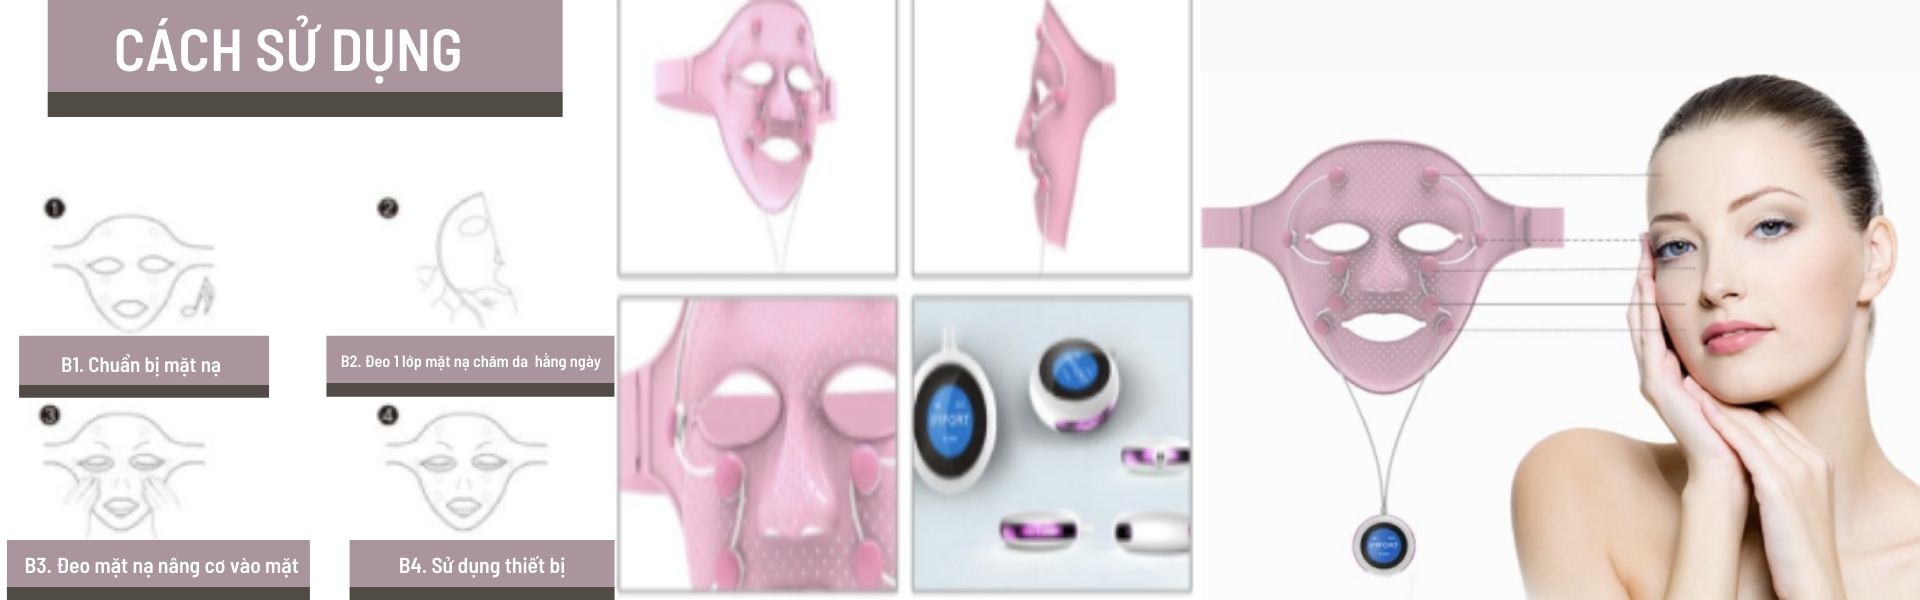 Hướng dẫn sử dụng mặt nạ nâng cơ 3D massage 360 độ trị mụn - VLINE MASK công nghệ EMS